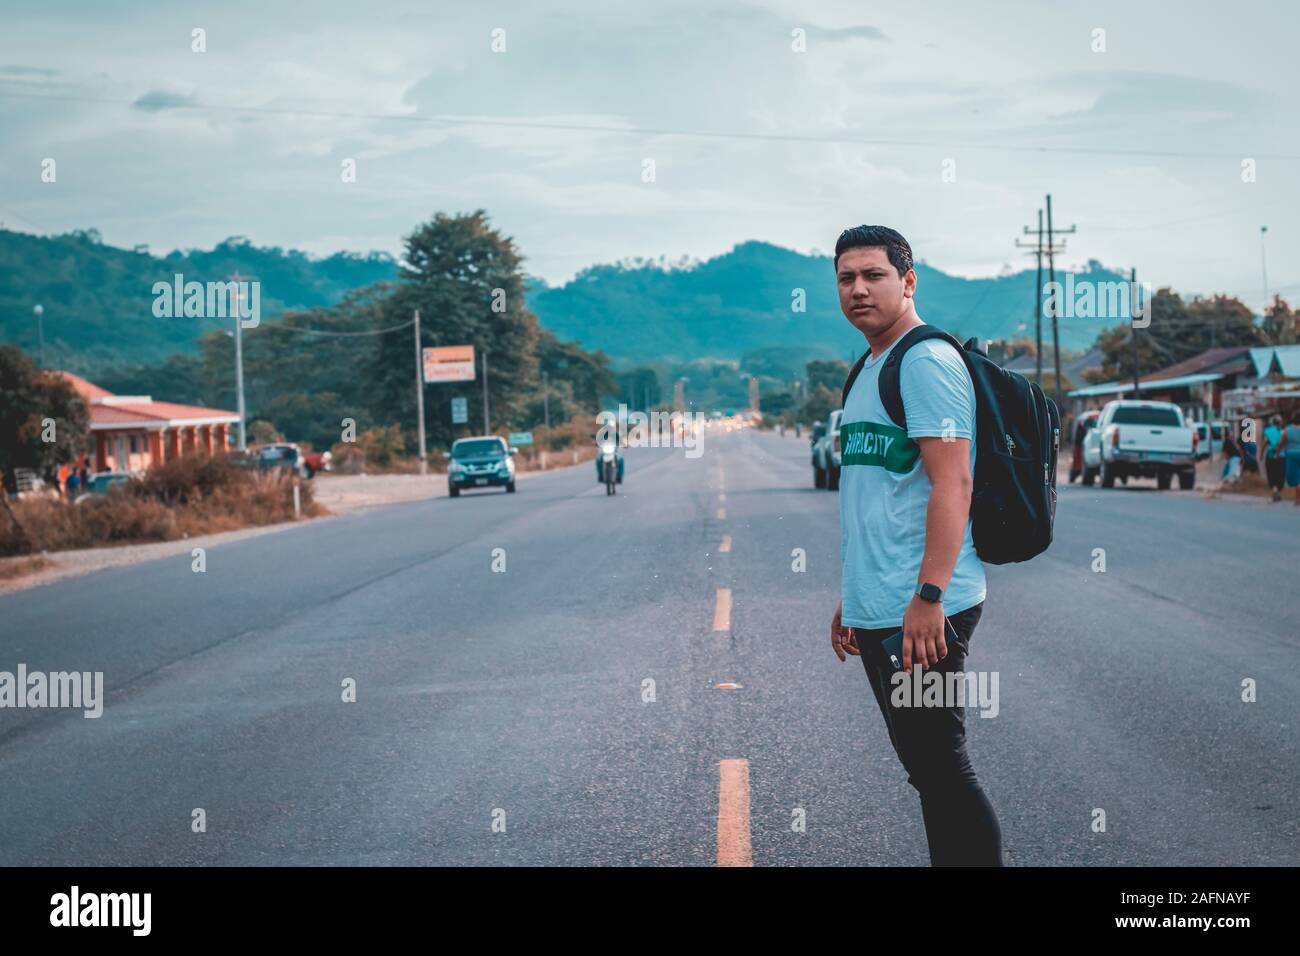 SAN PEDRO SULA, HONDURAS - Dec 08, 2019: Chico parado en medio de la carretera viendo hacia la camara. Stock Photo